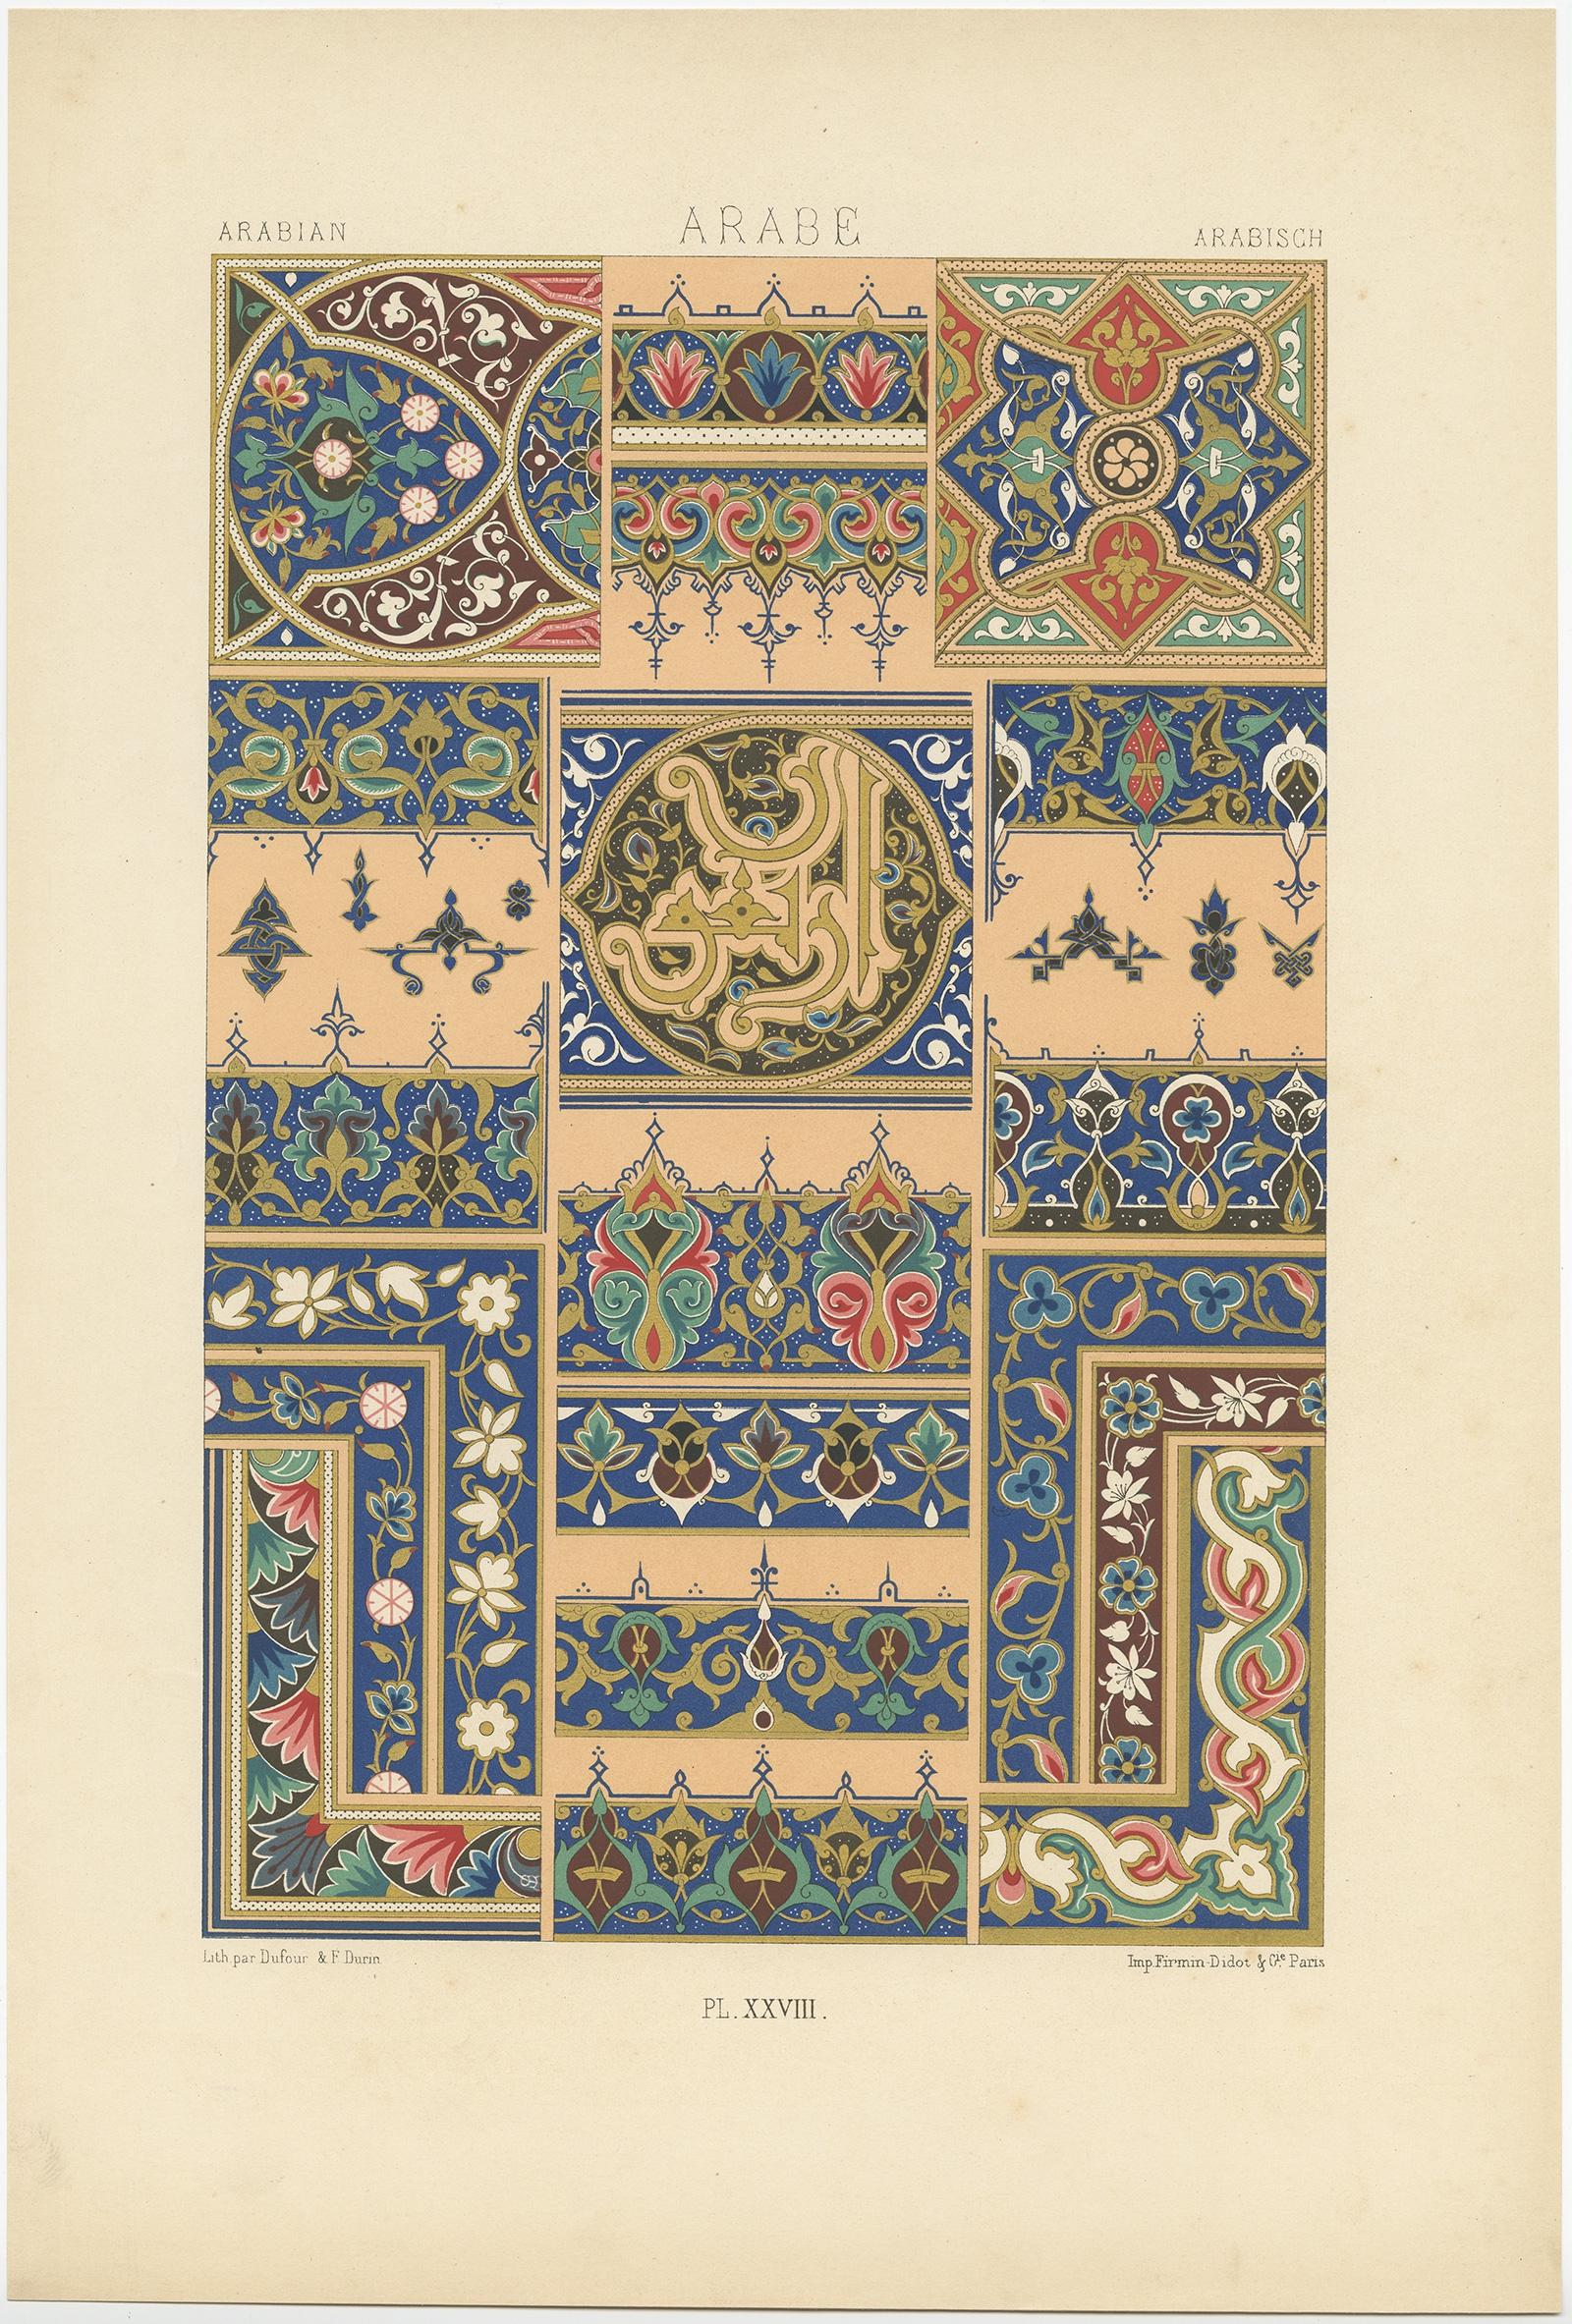 Ancienne gravure d'art décoratif d'Arabie. 

Cette gravure provient de 